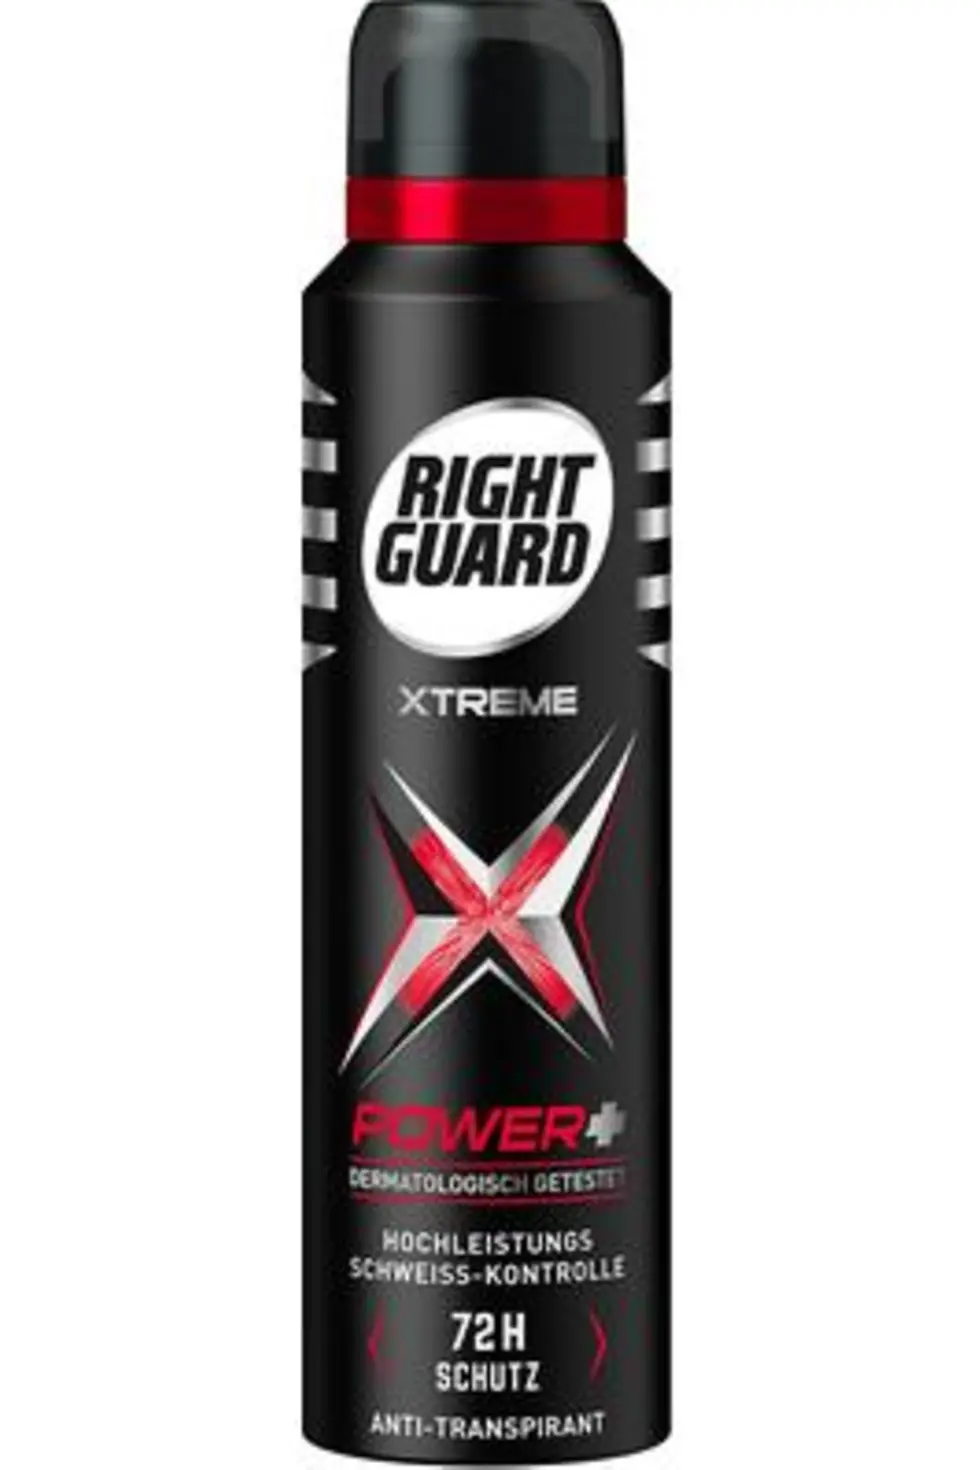 rightguard-deodorant